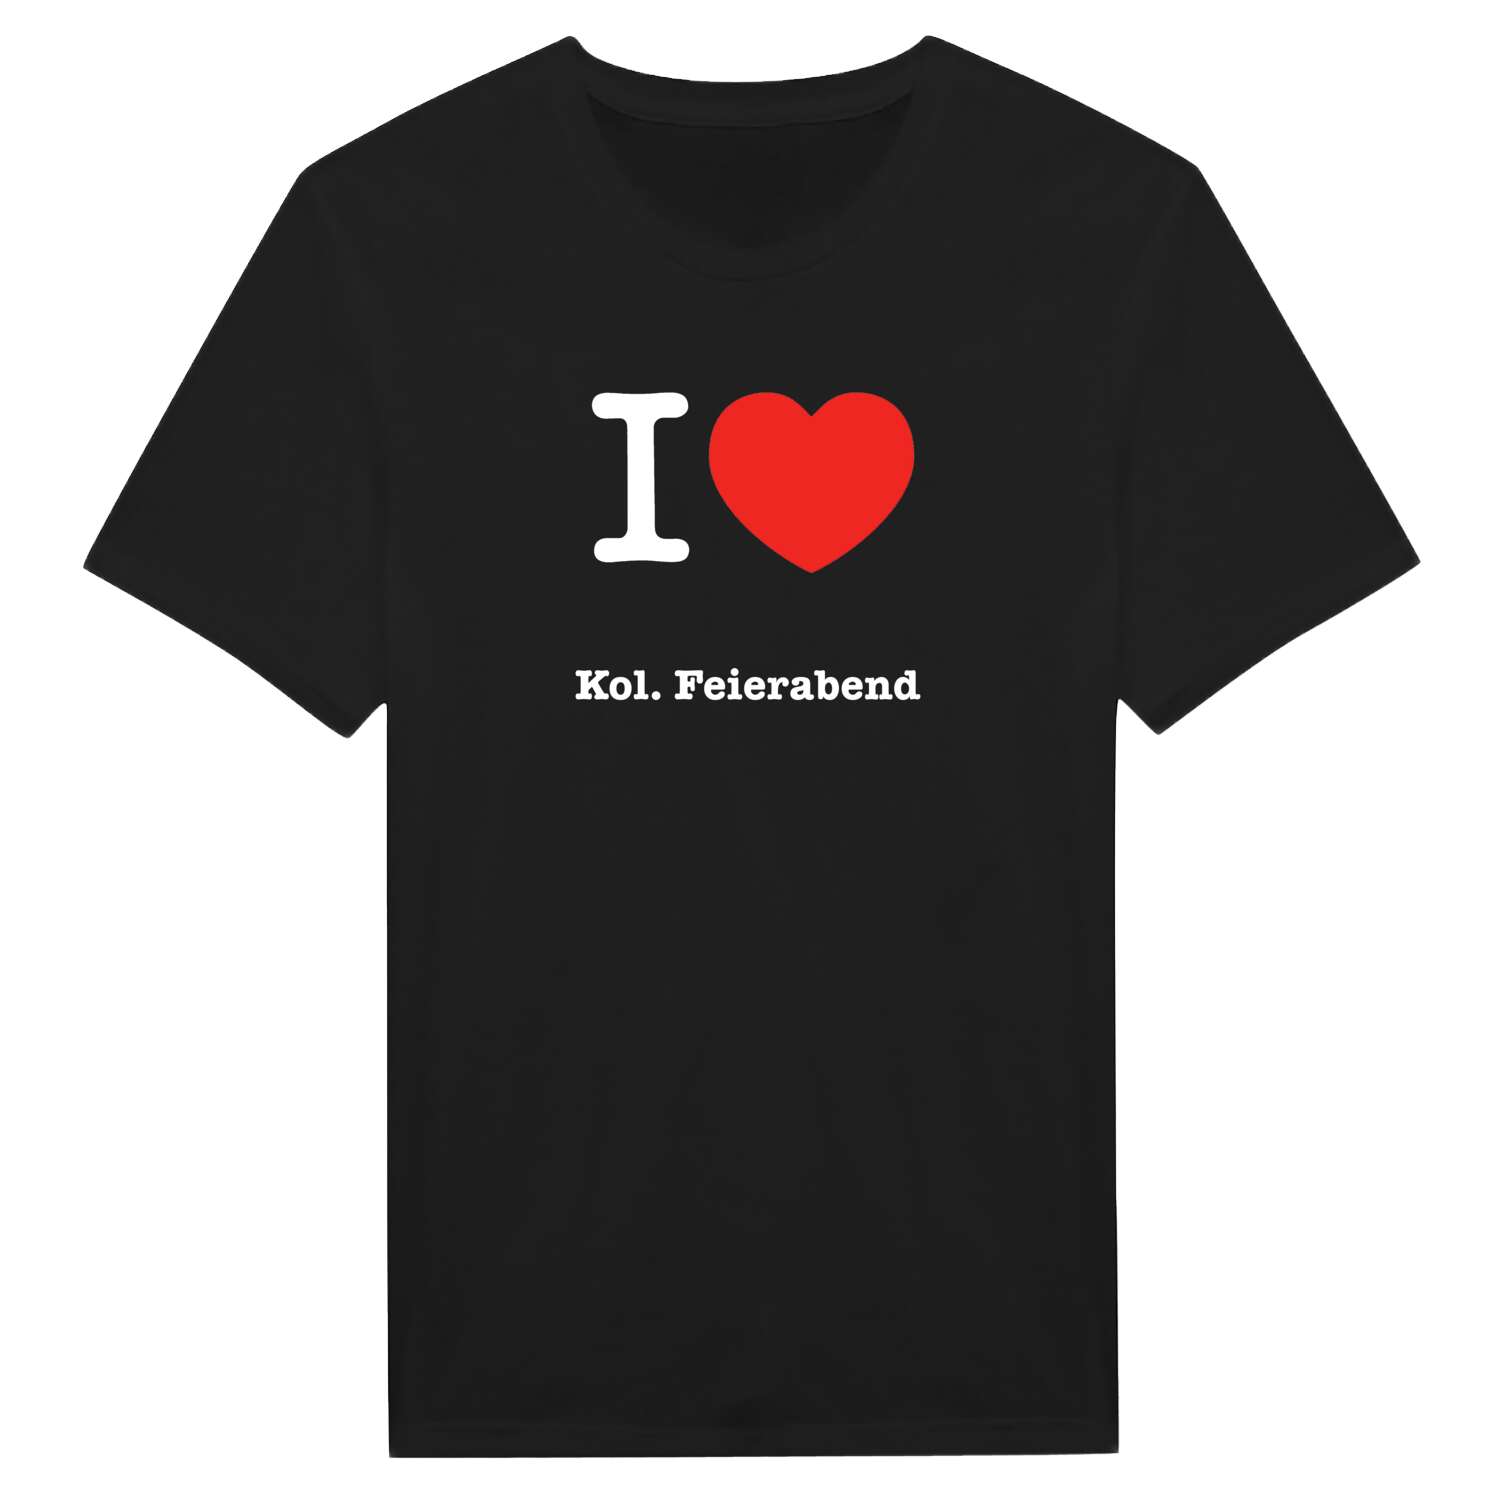 Kol. Feierabend T-Shirt »I love«